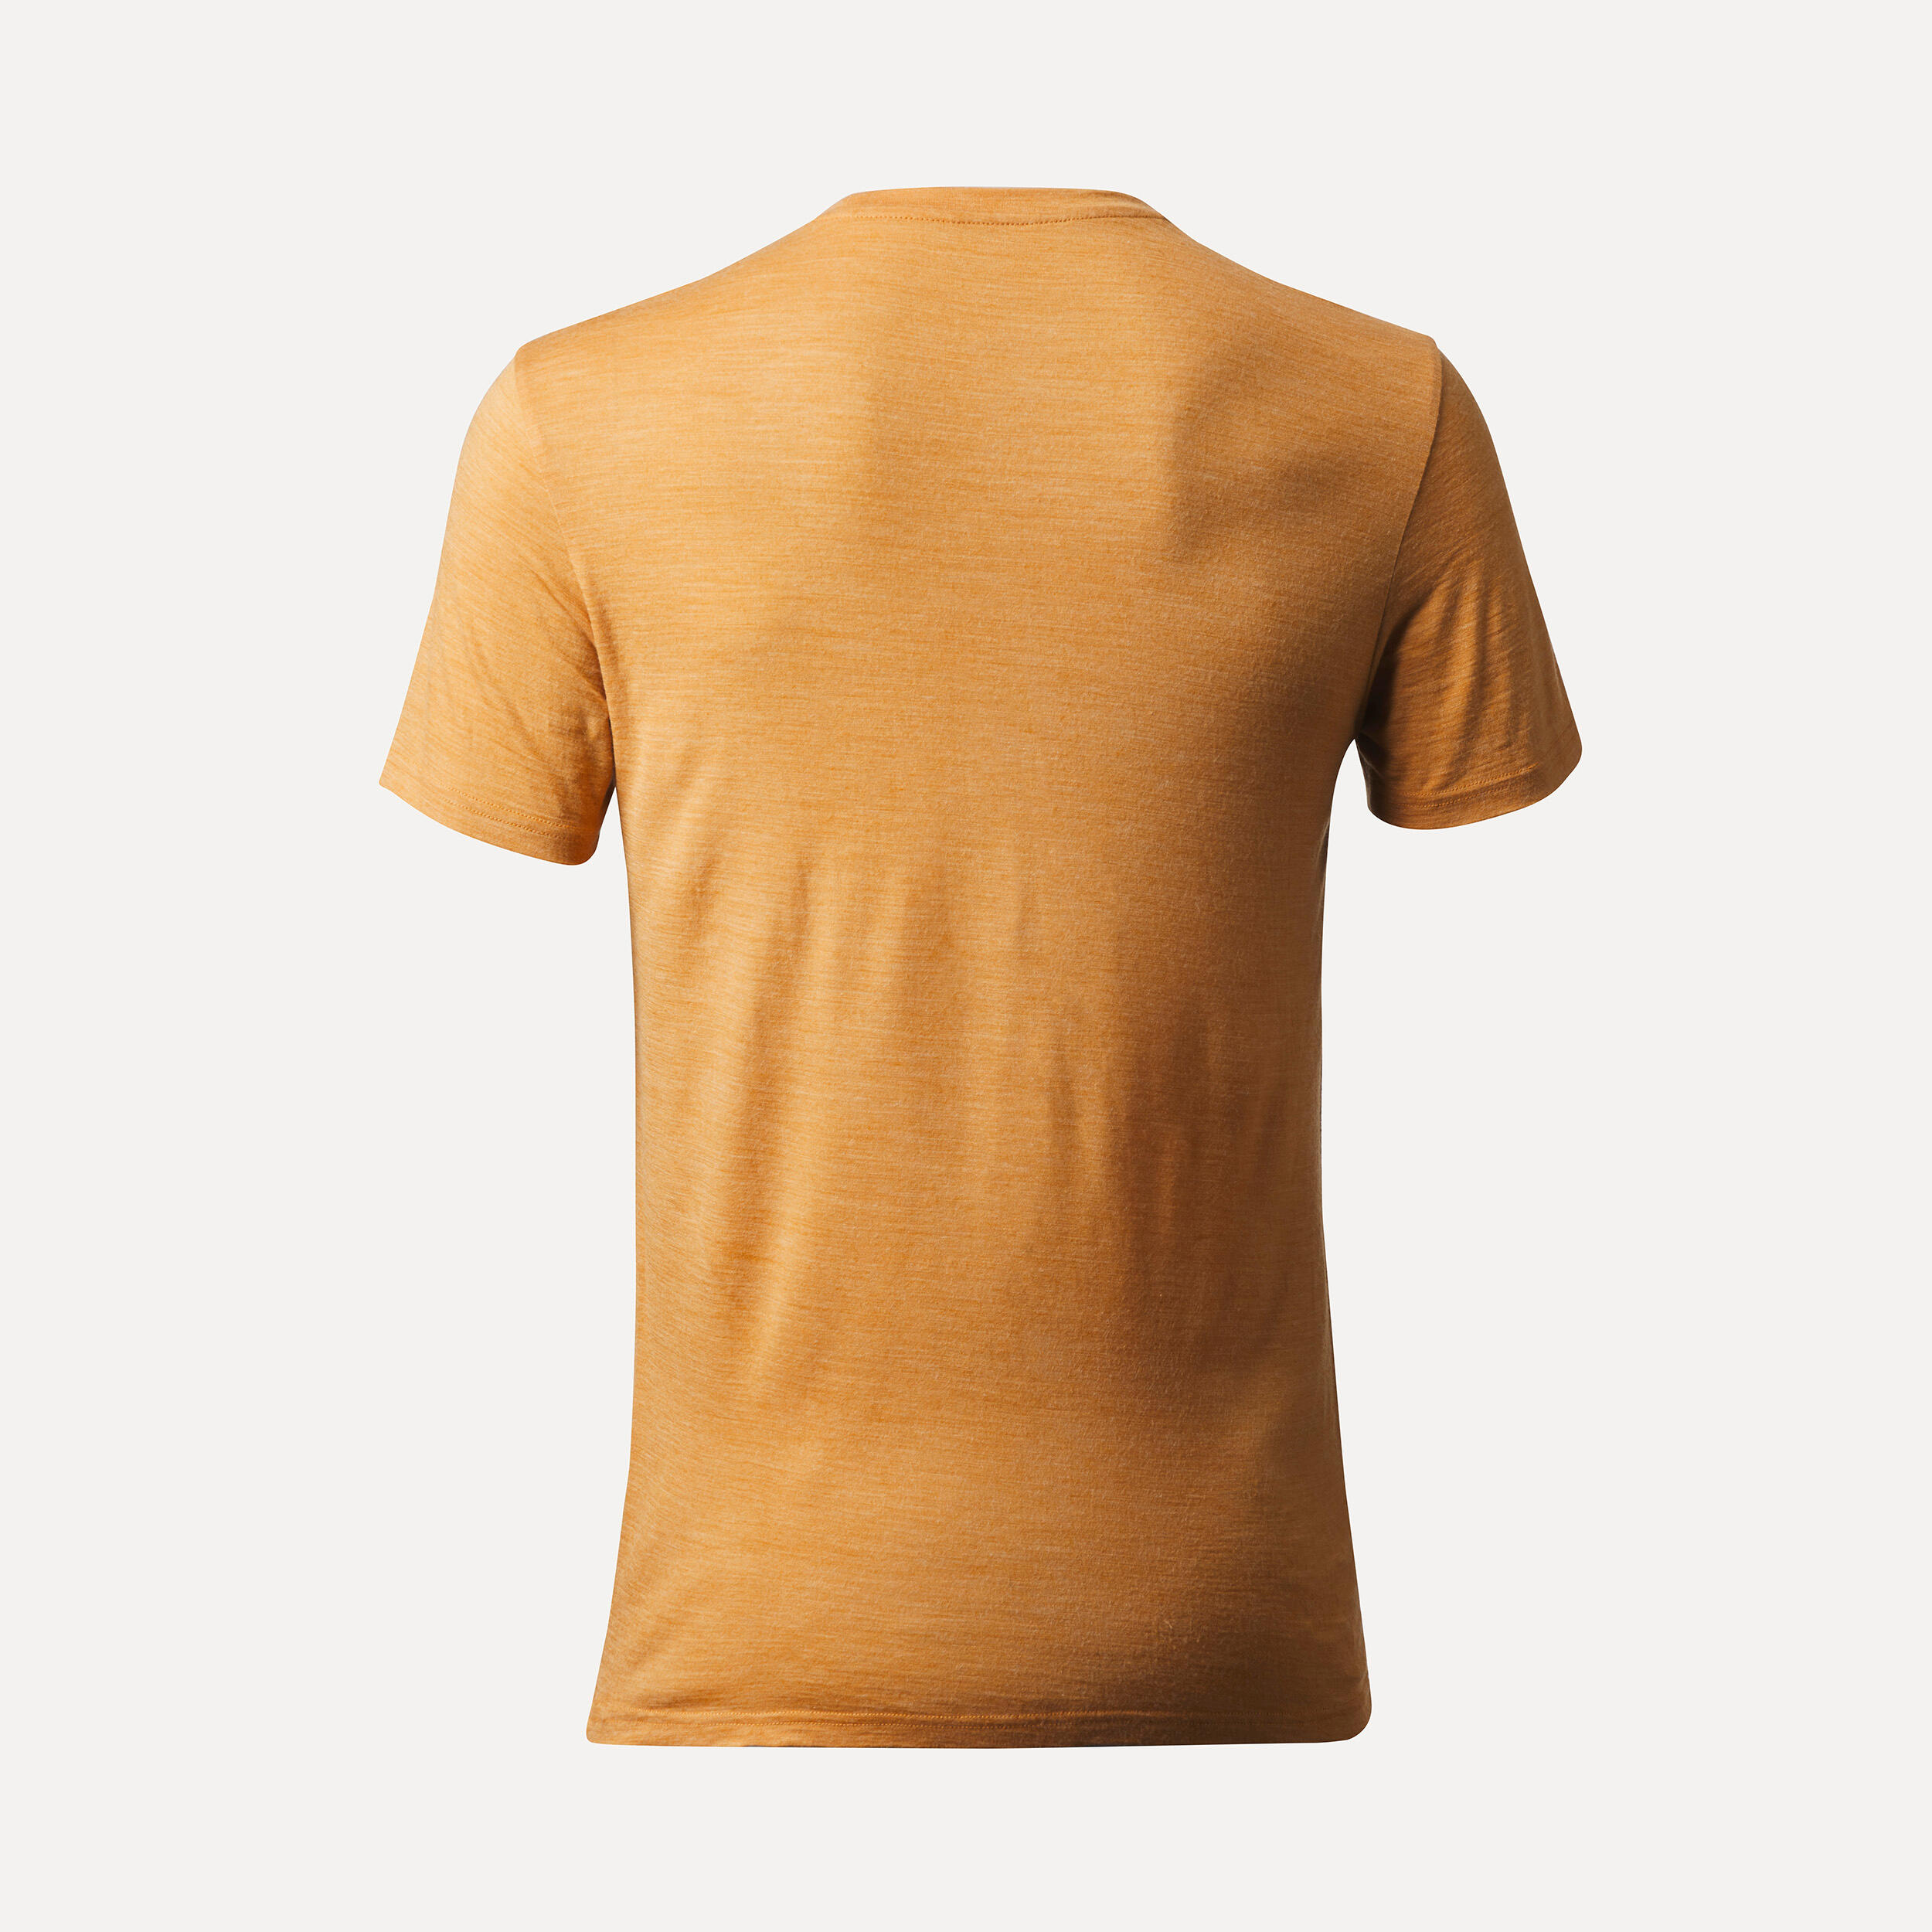 Men’s short-sleeved Merino wool hiking travel t-shirt - TRAVEL 500 yellow 3/4